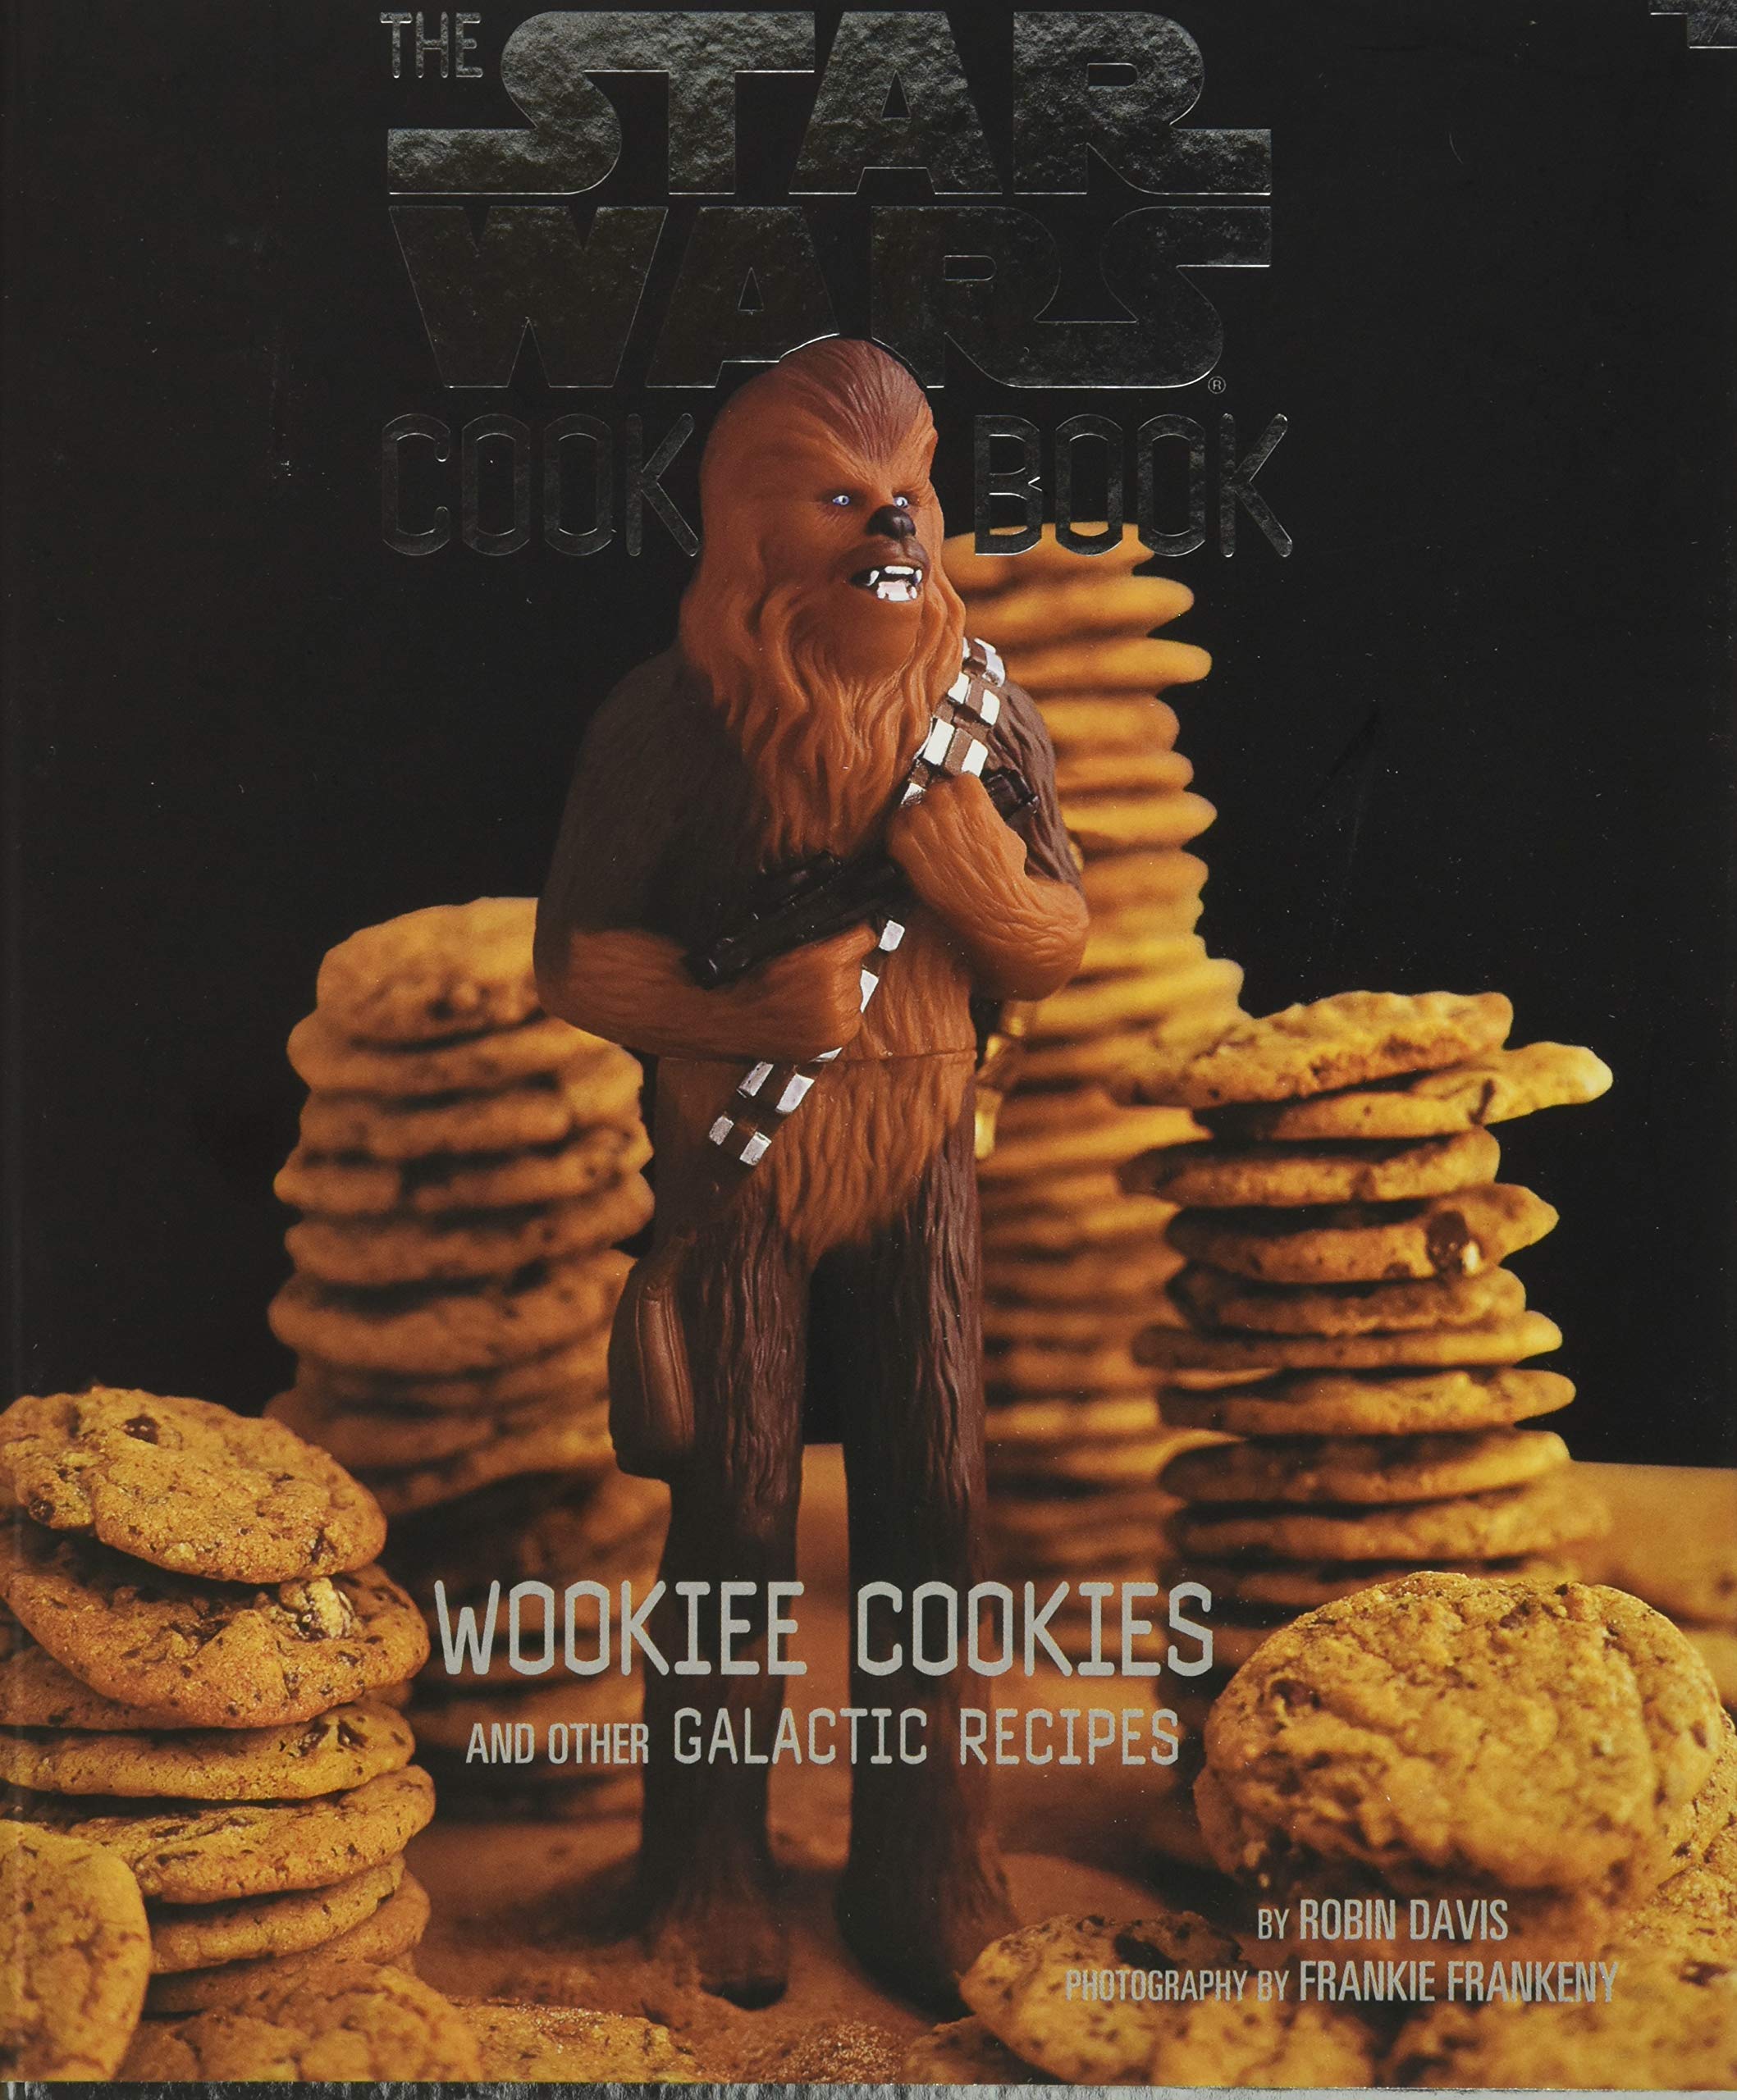 Star Wars Wookie Cookies Cookbook